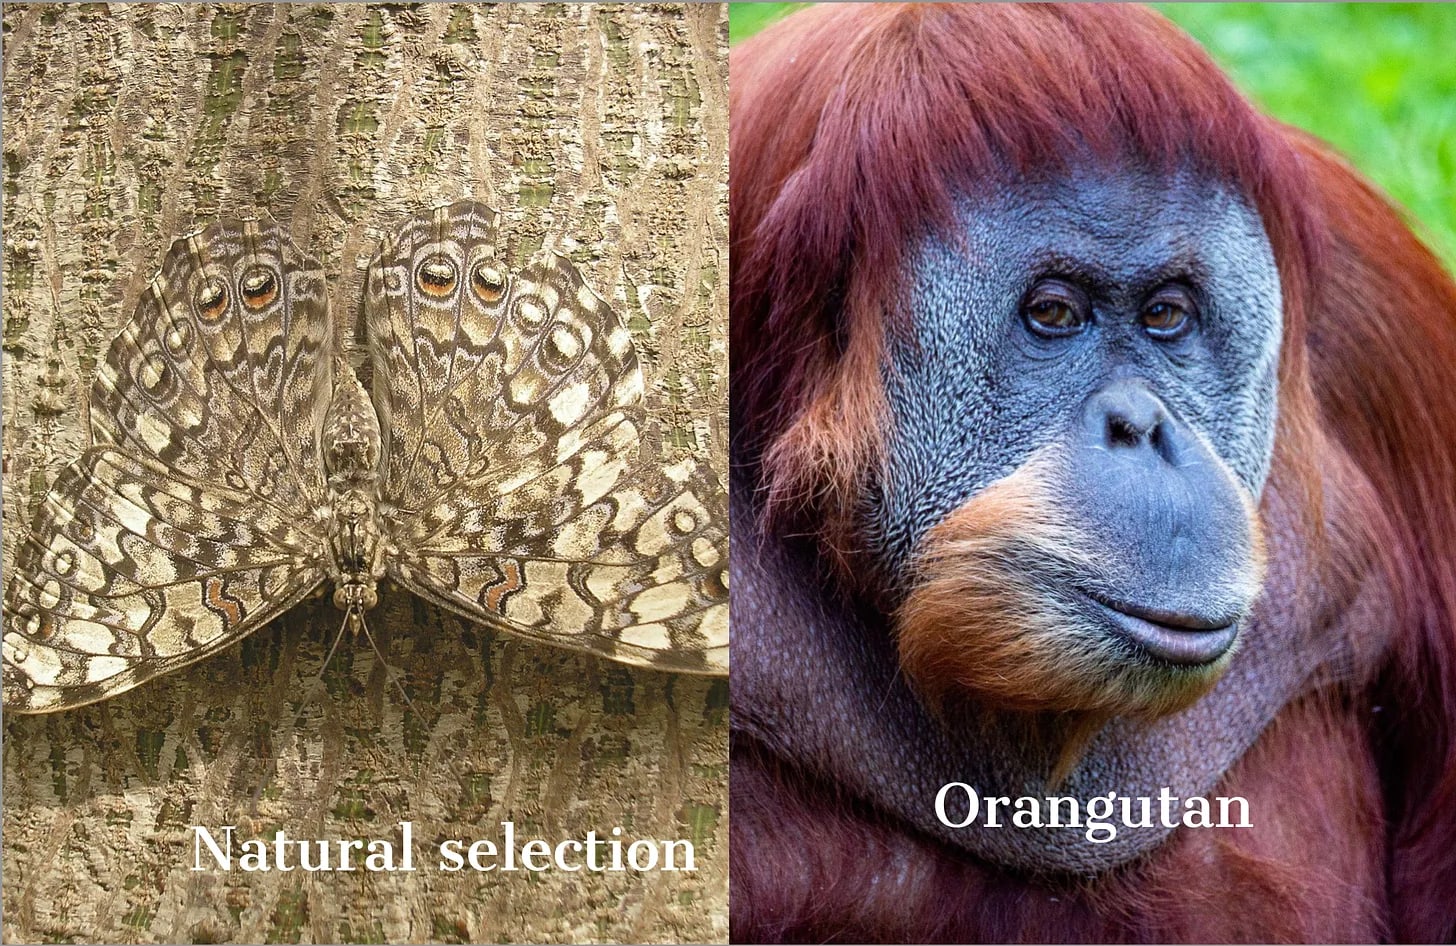 Natural selection and orangutan